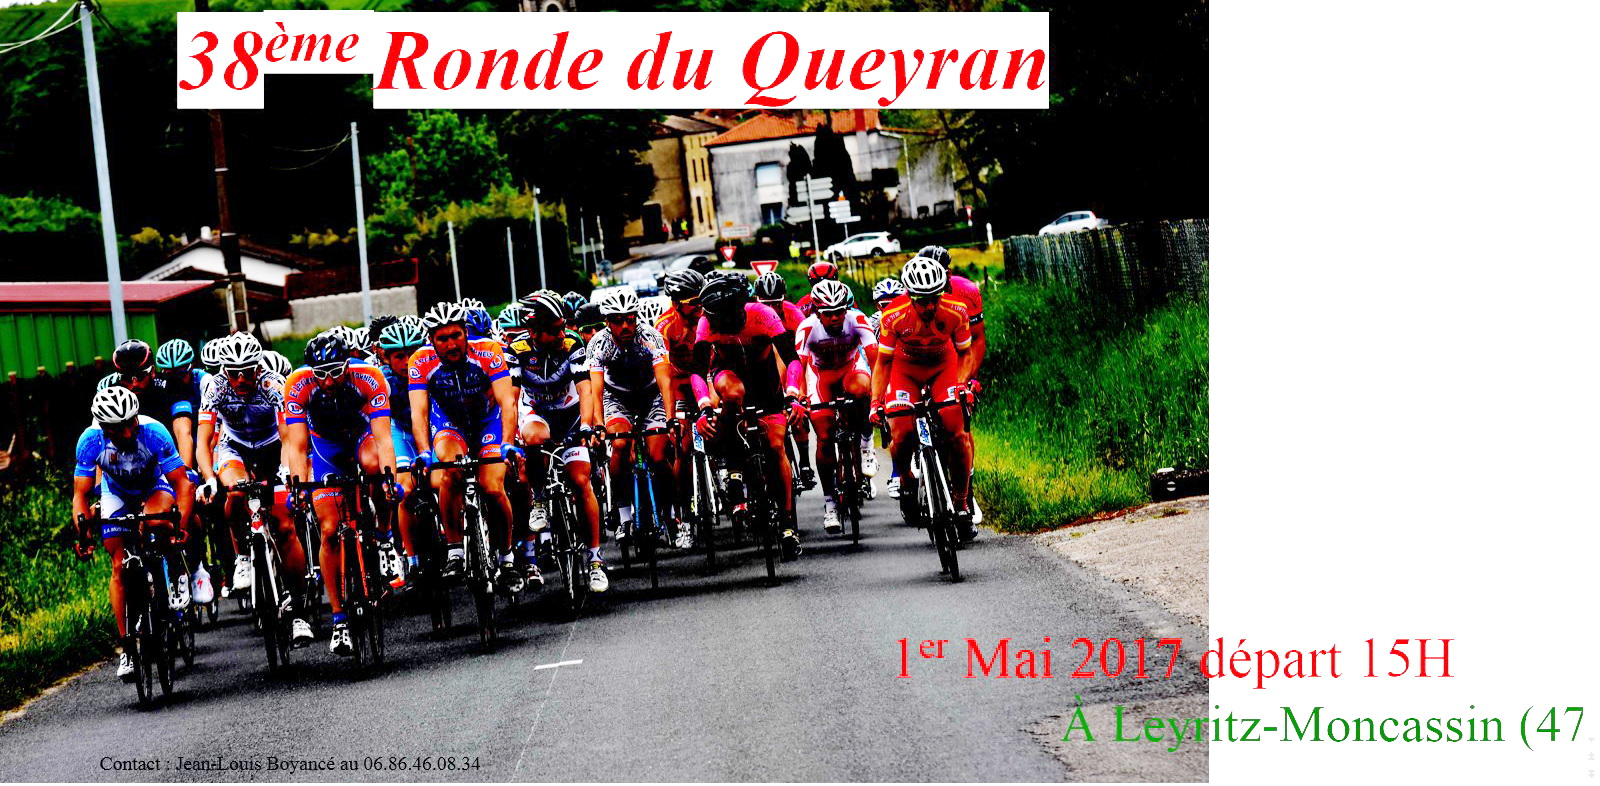 Ronde du Queyran 2017